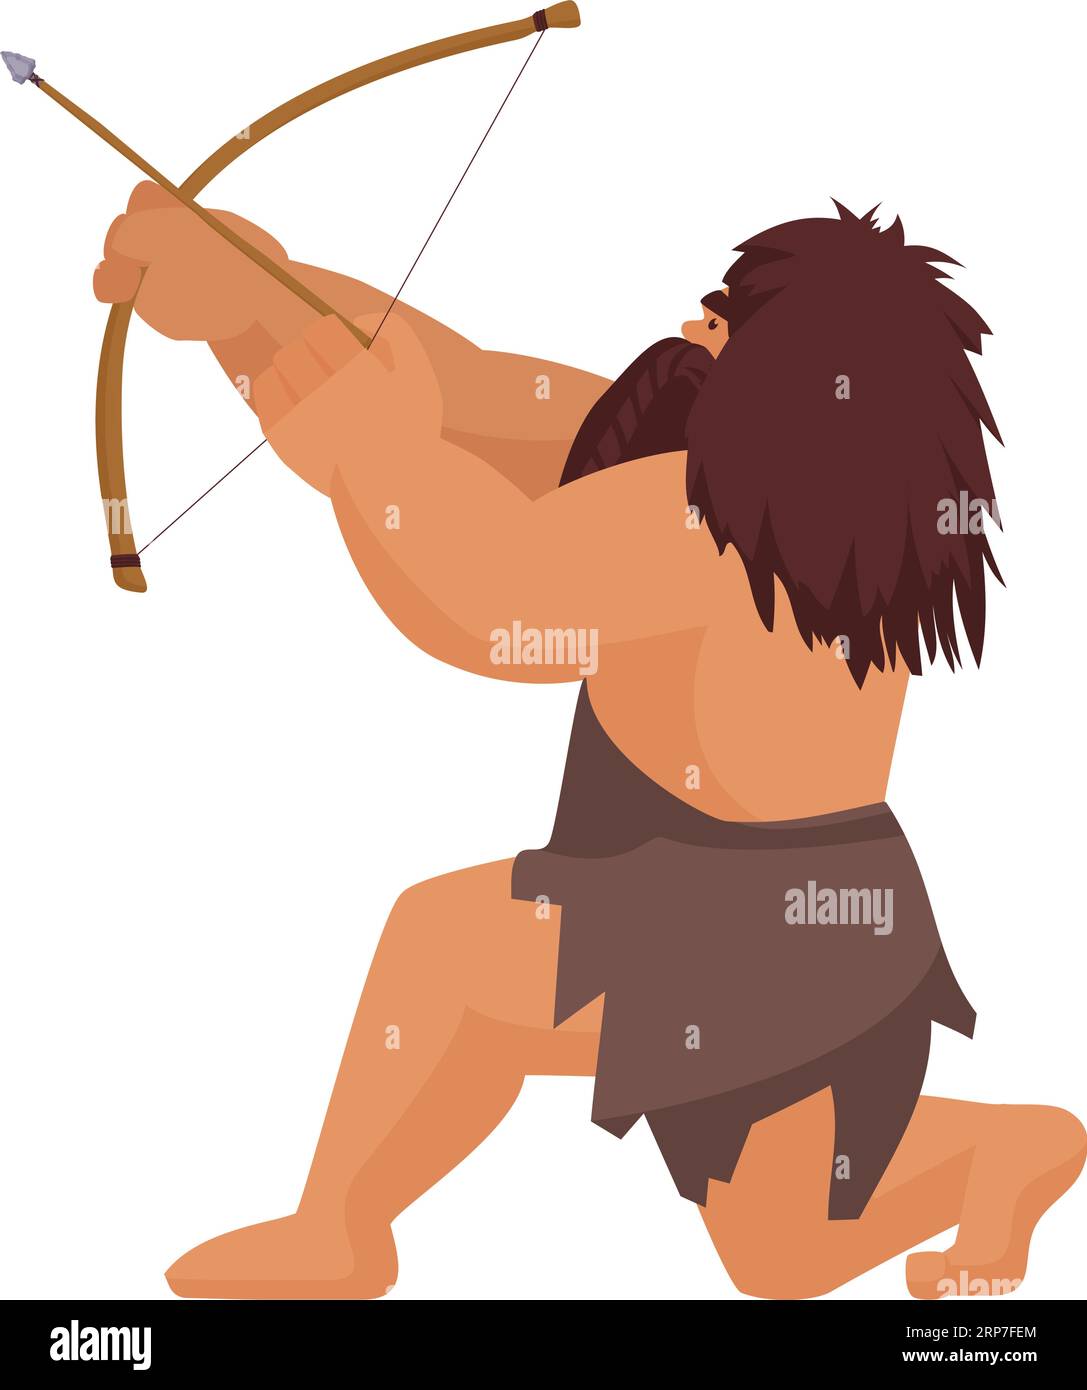 Höhlenbewohner mit Bogen jagen. Primitiver Jäger mit alten alten Waffen-Zeichentrickvektor-Illustration Stock Vektor